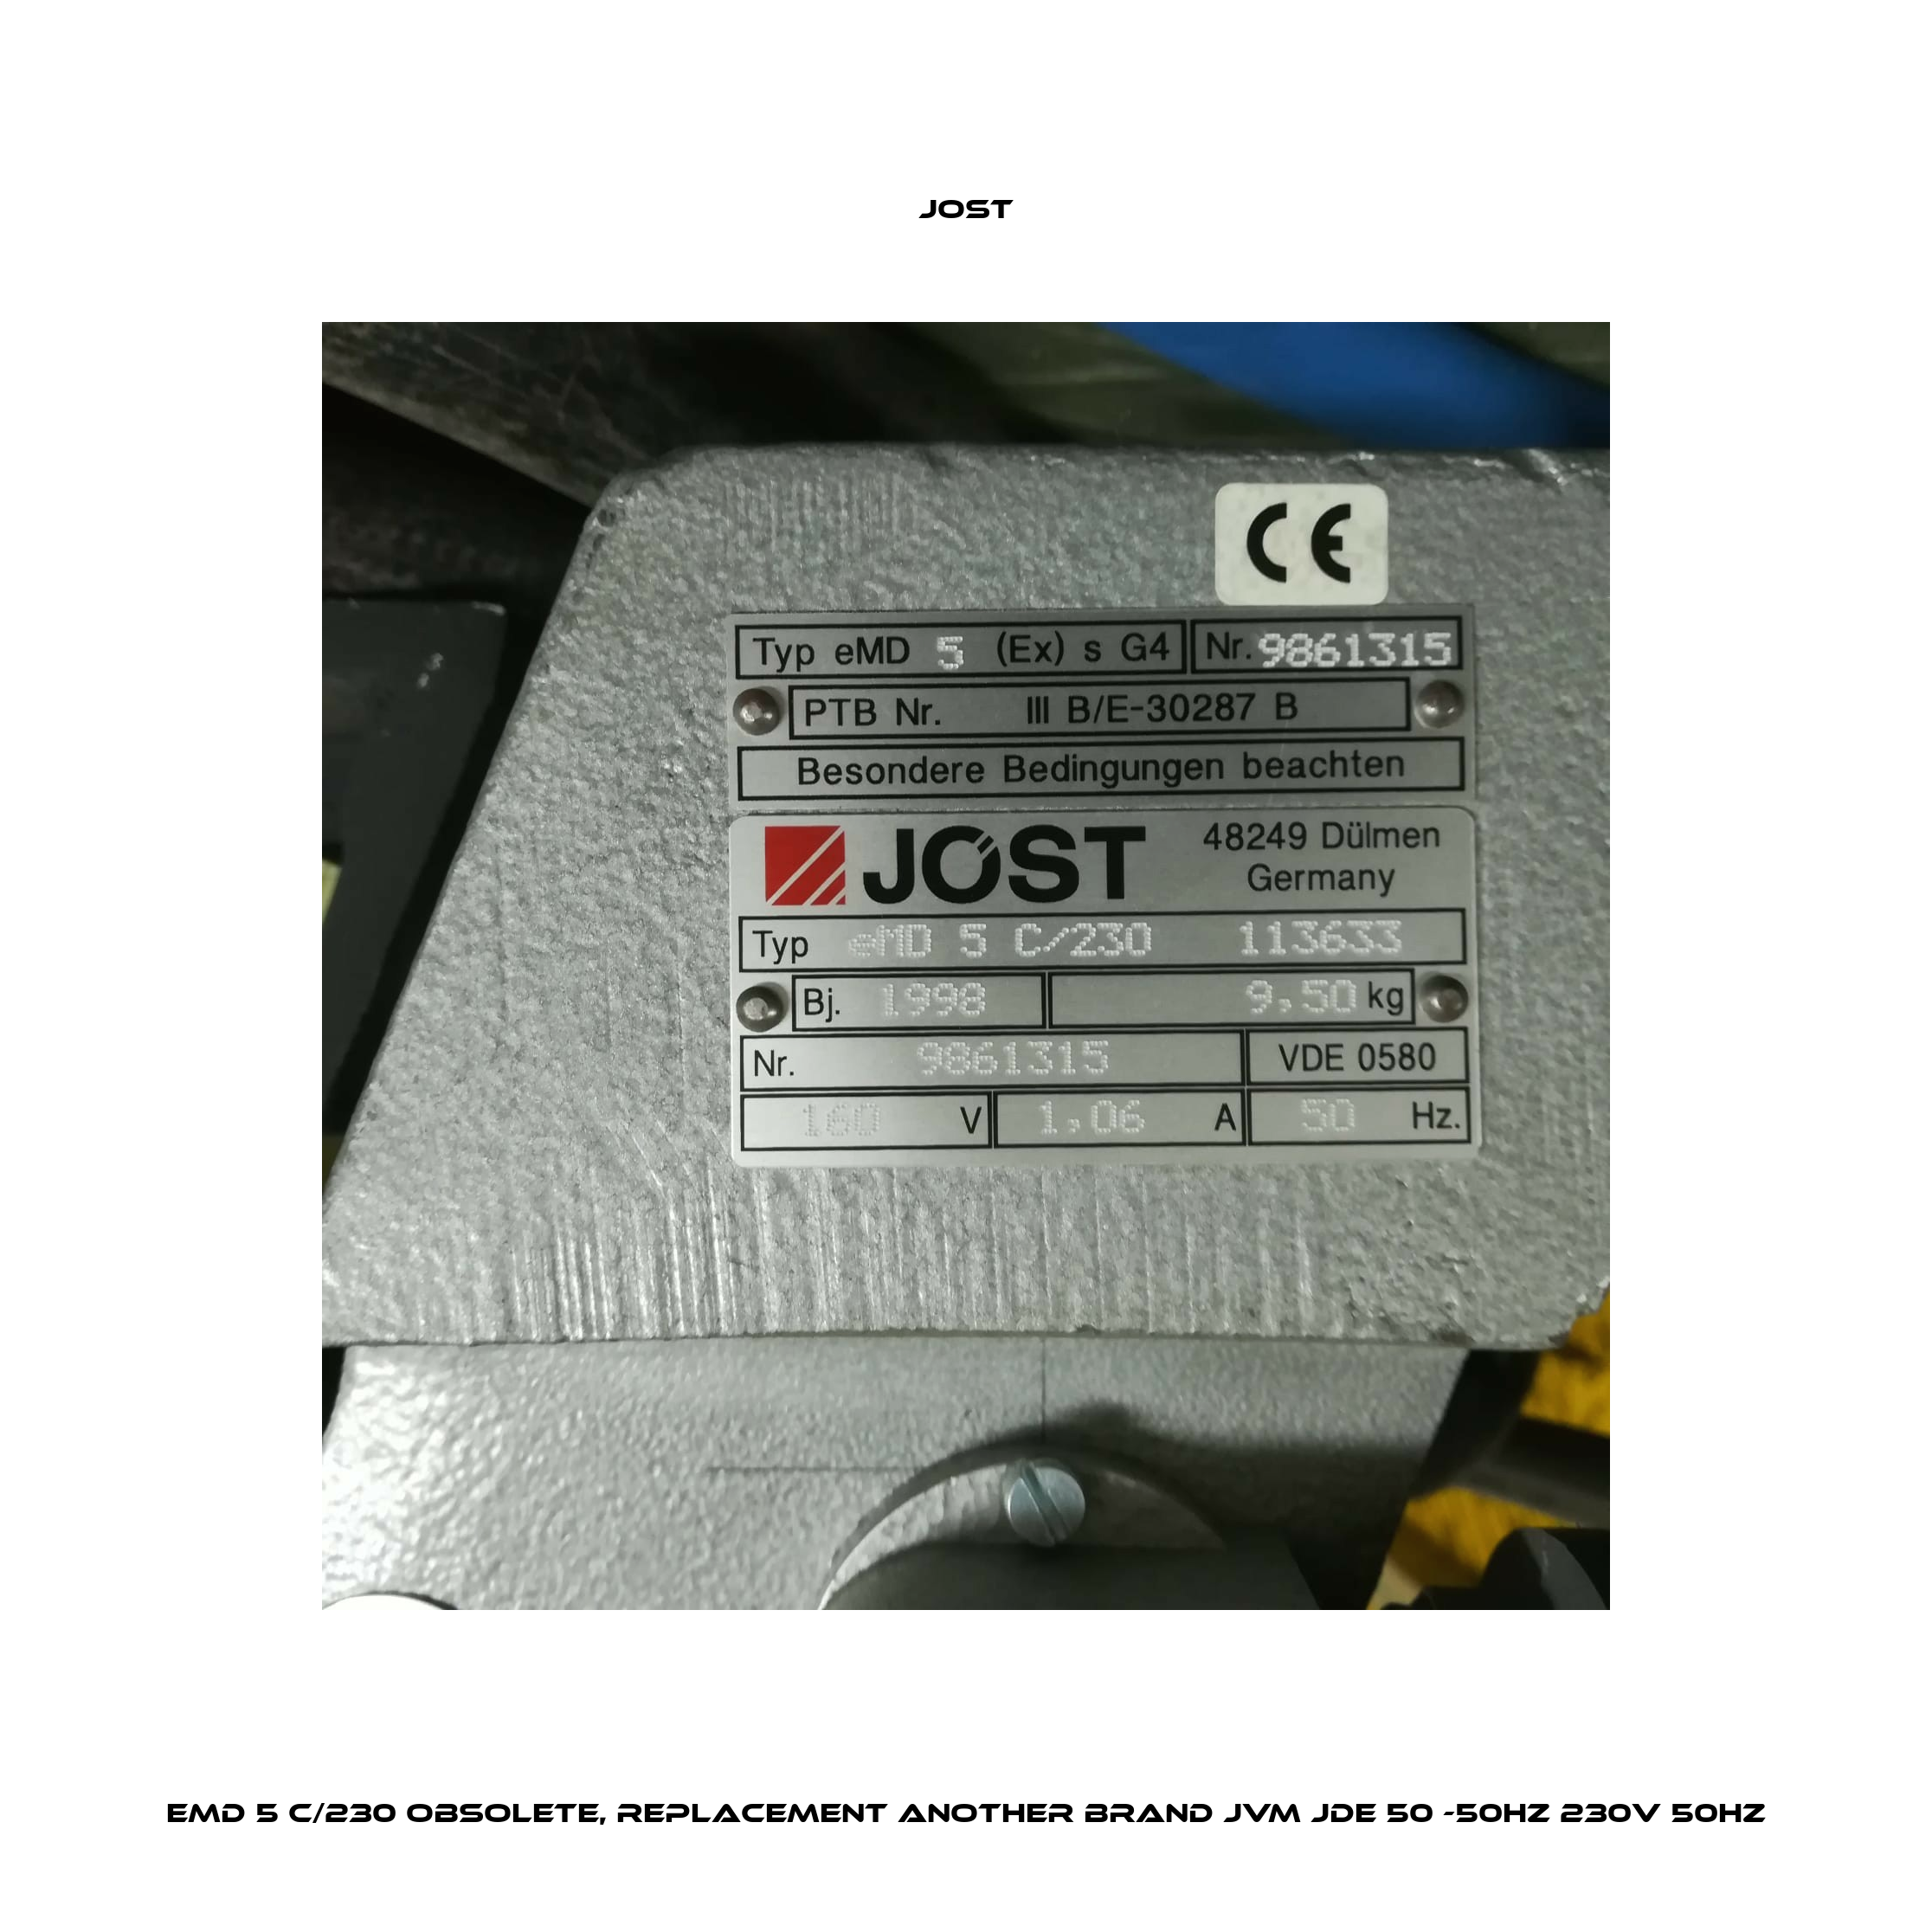 eMD 5 C/230 obsolete, replacement another brand JVM JDE 50 -50HZ 230V 50HZ Jost